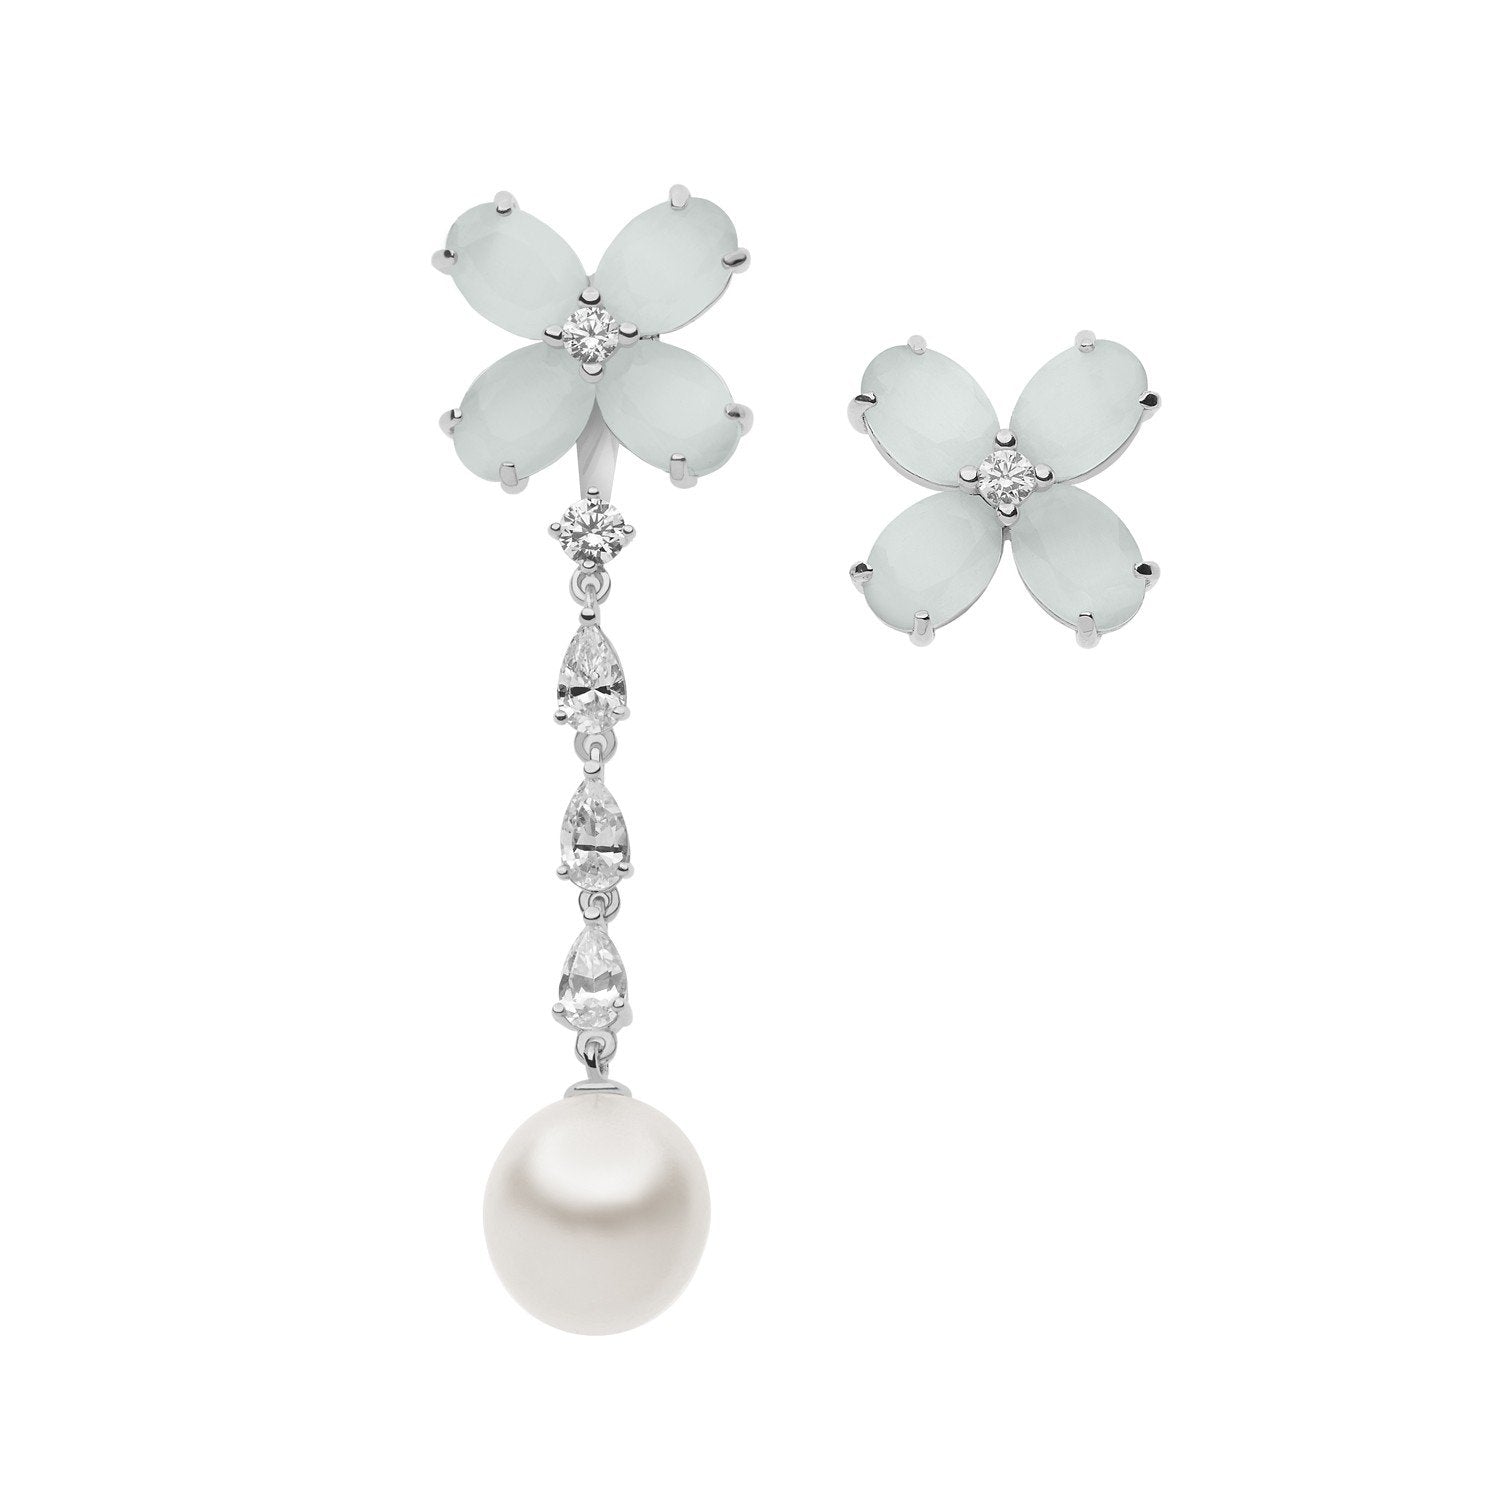 Orecchini pendenti COMETE GIOIELLI argento collezione farfalle con zirconi, cristalli e perla ORA 128 - bonini-gioielli